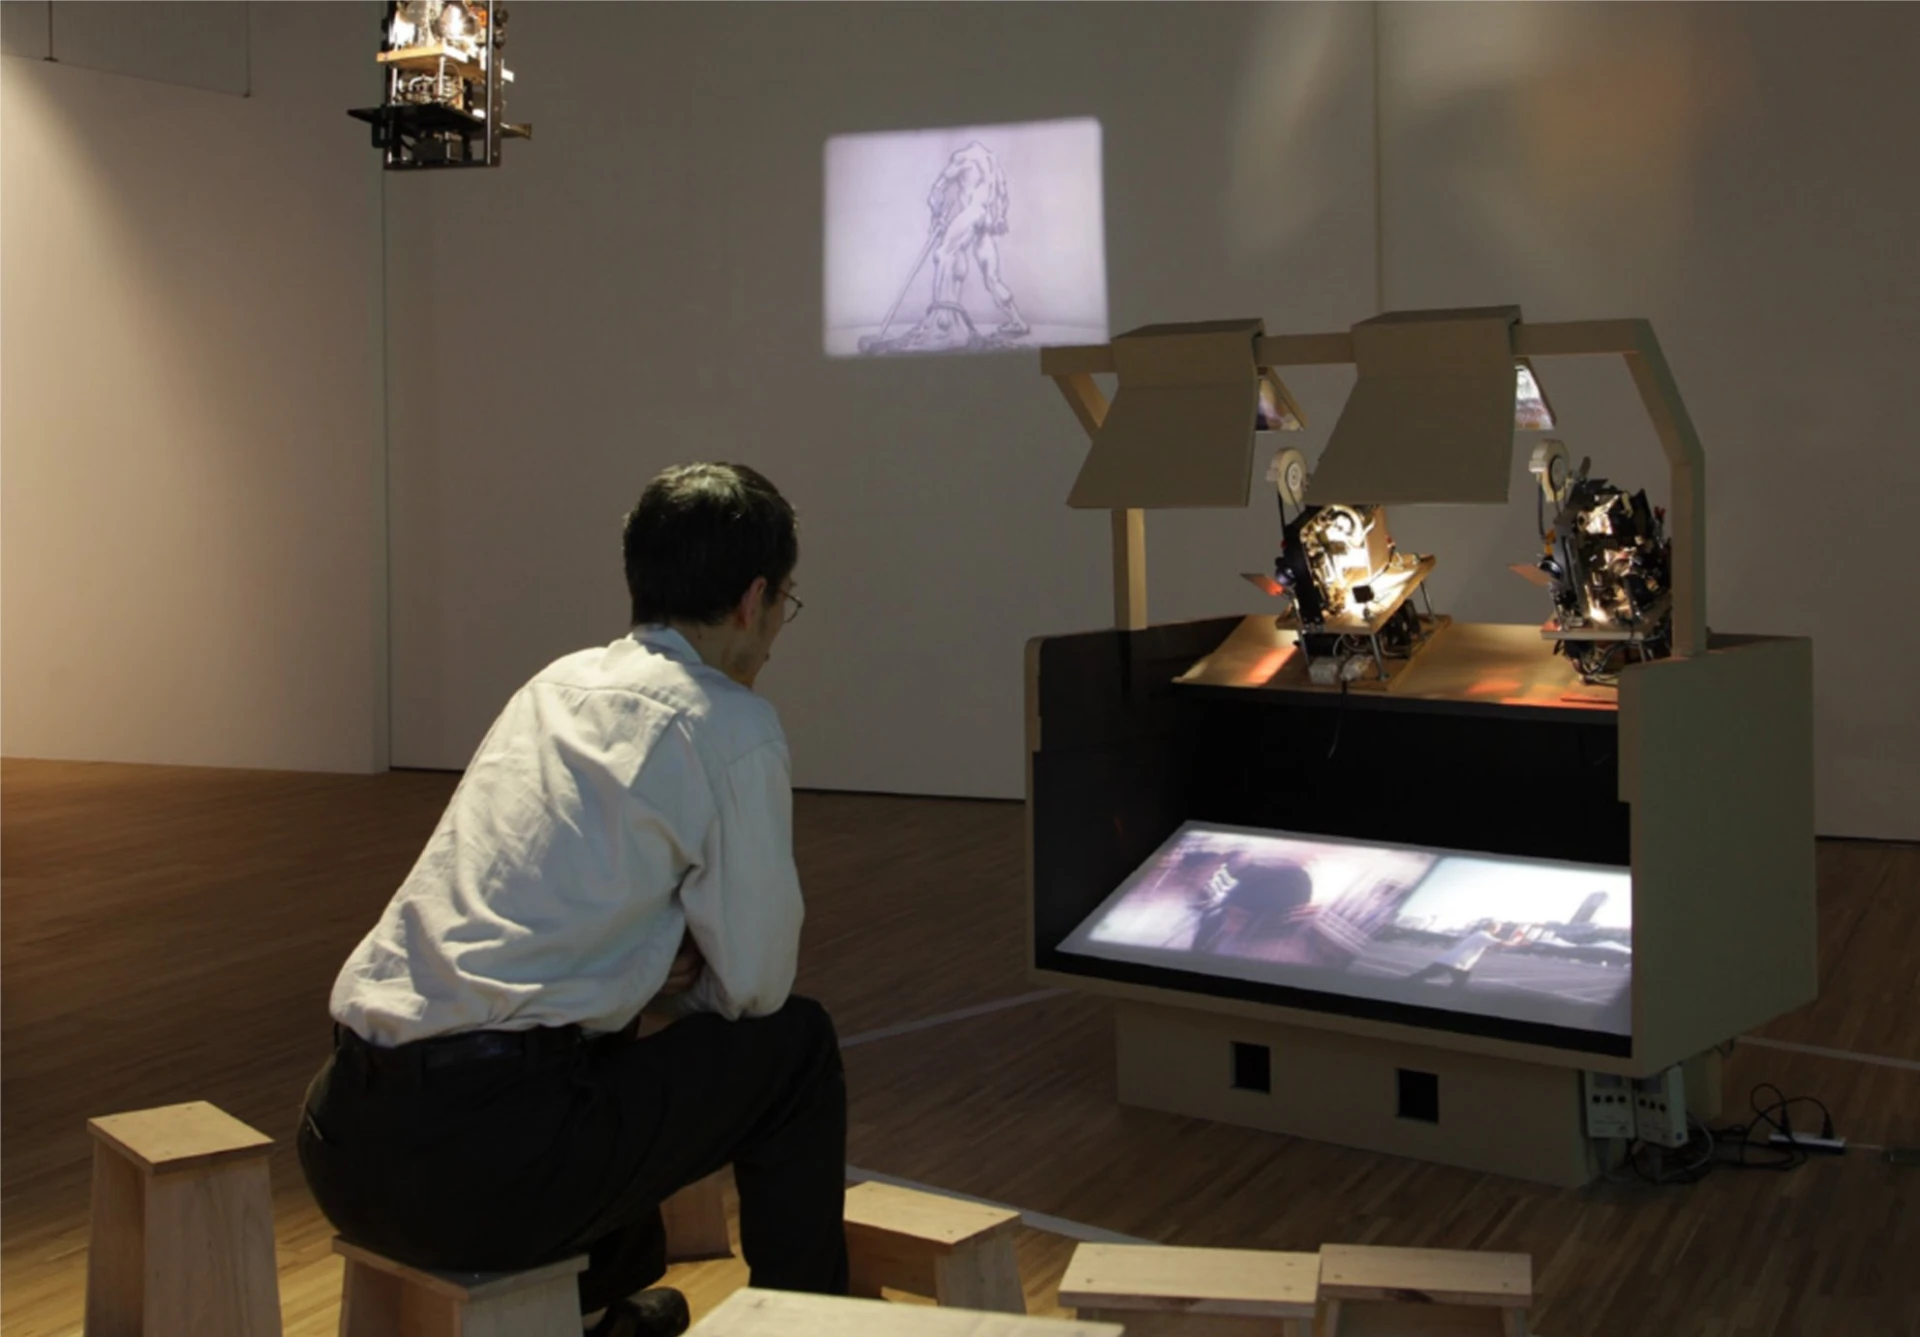 《明箱電影院之路漫漫》，2008，雙螢幕版8釐米裝置，「浮動」於鳳甲美術館展場一景；陳明聰攝影-圖片